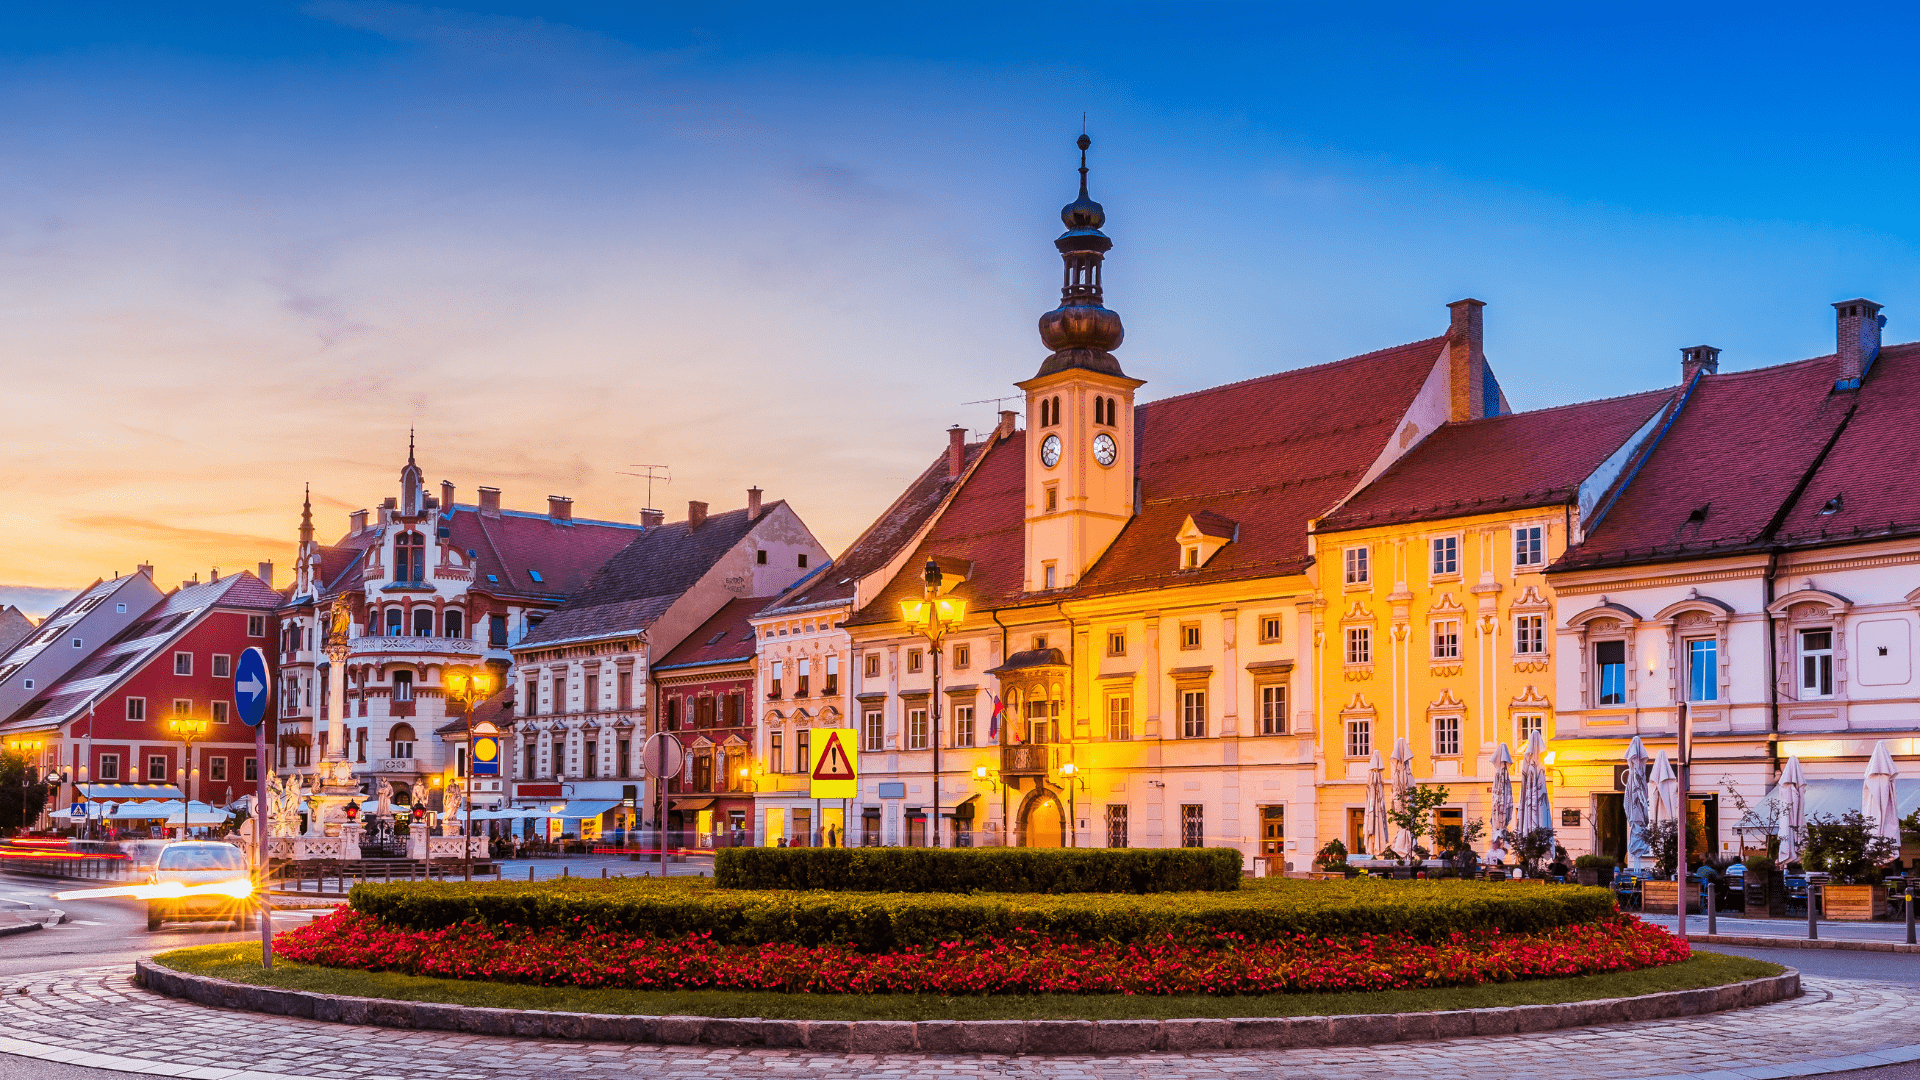 SLOVENIA - Rogaska Featured Image